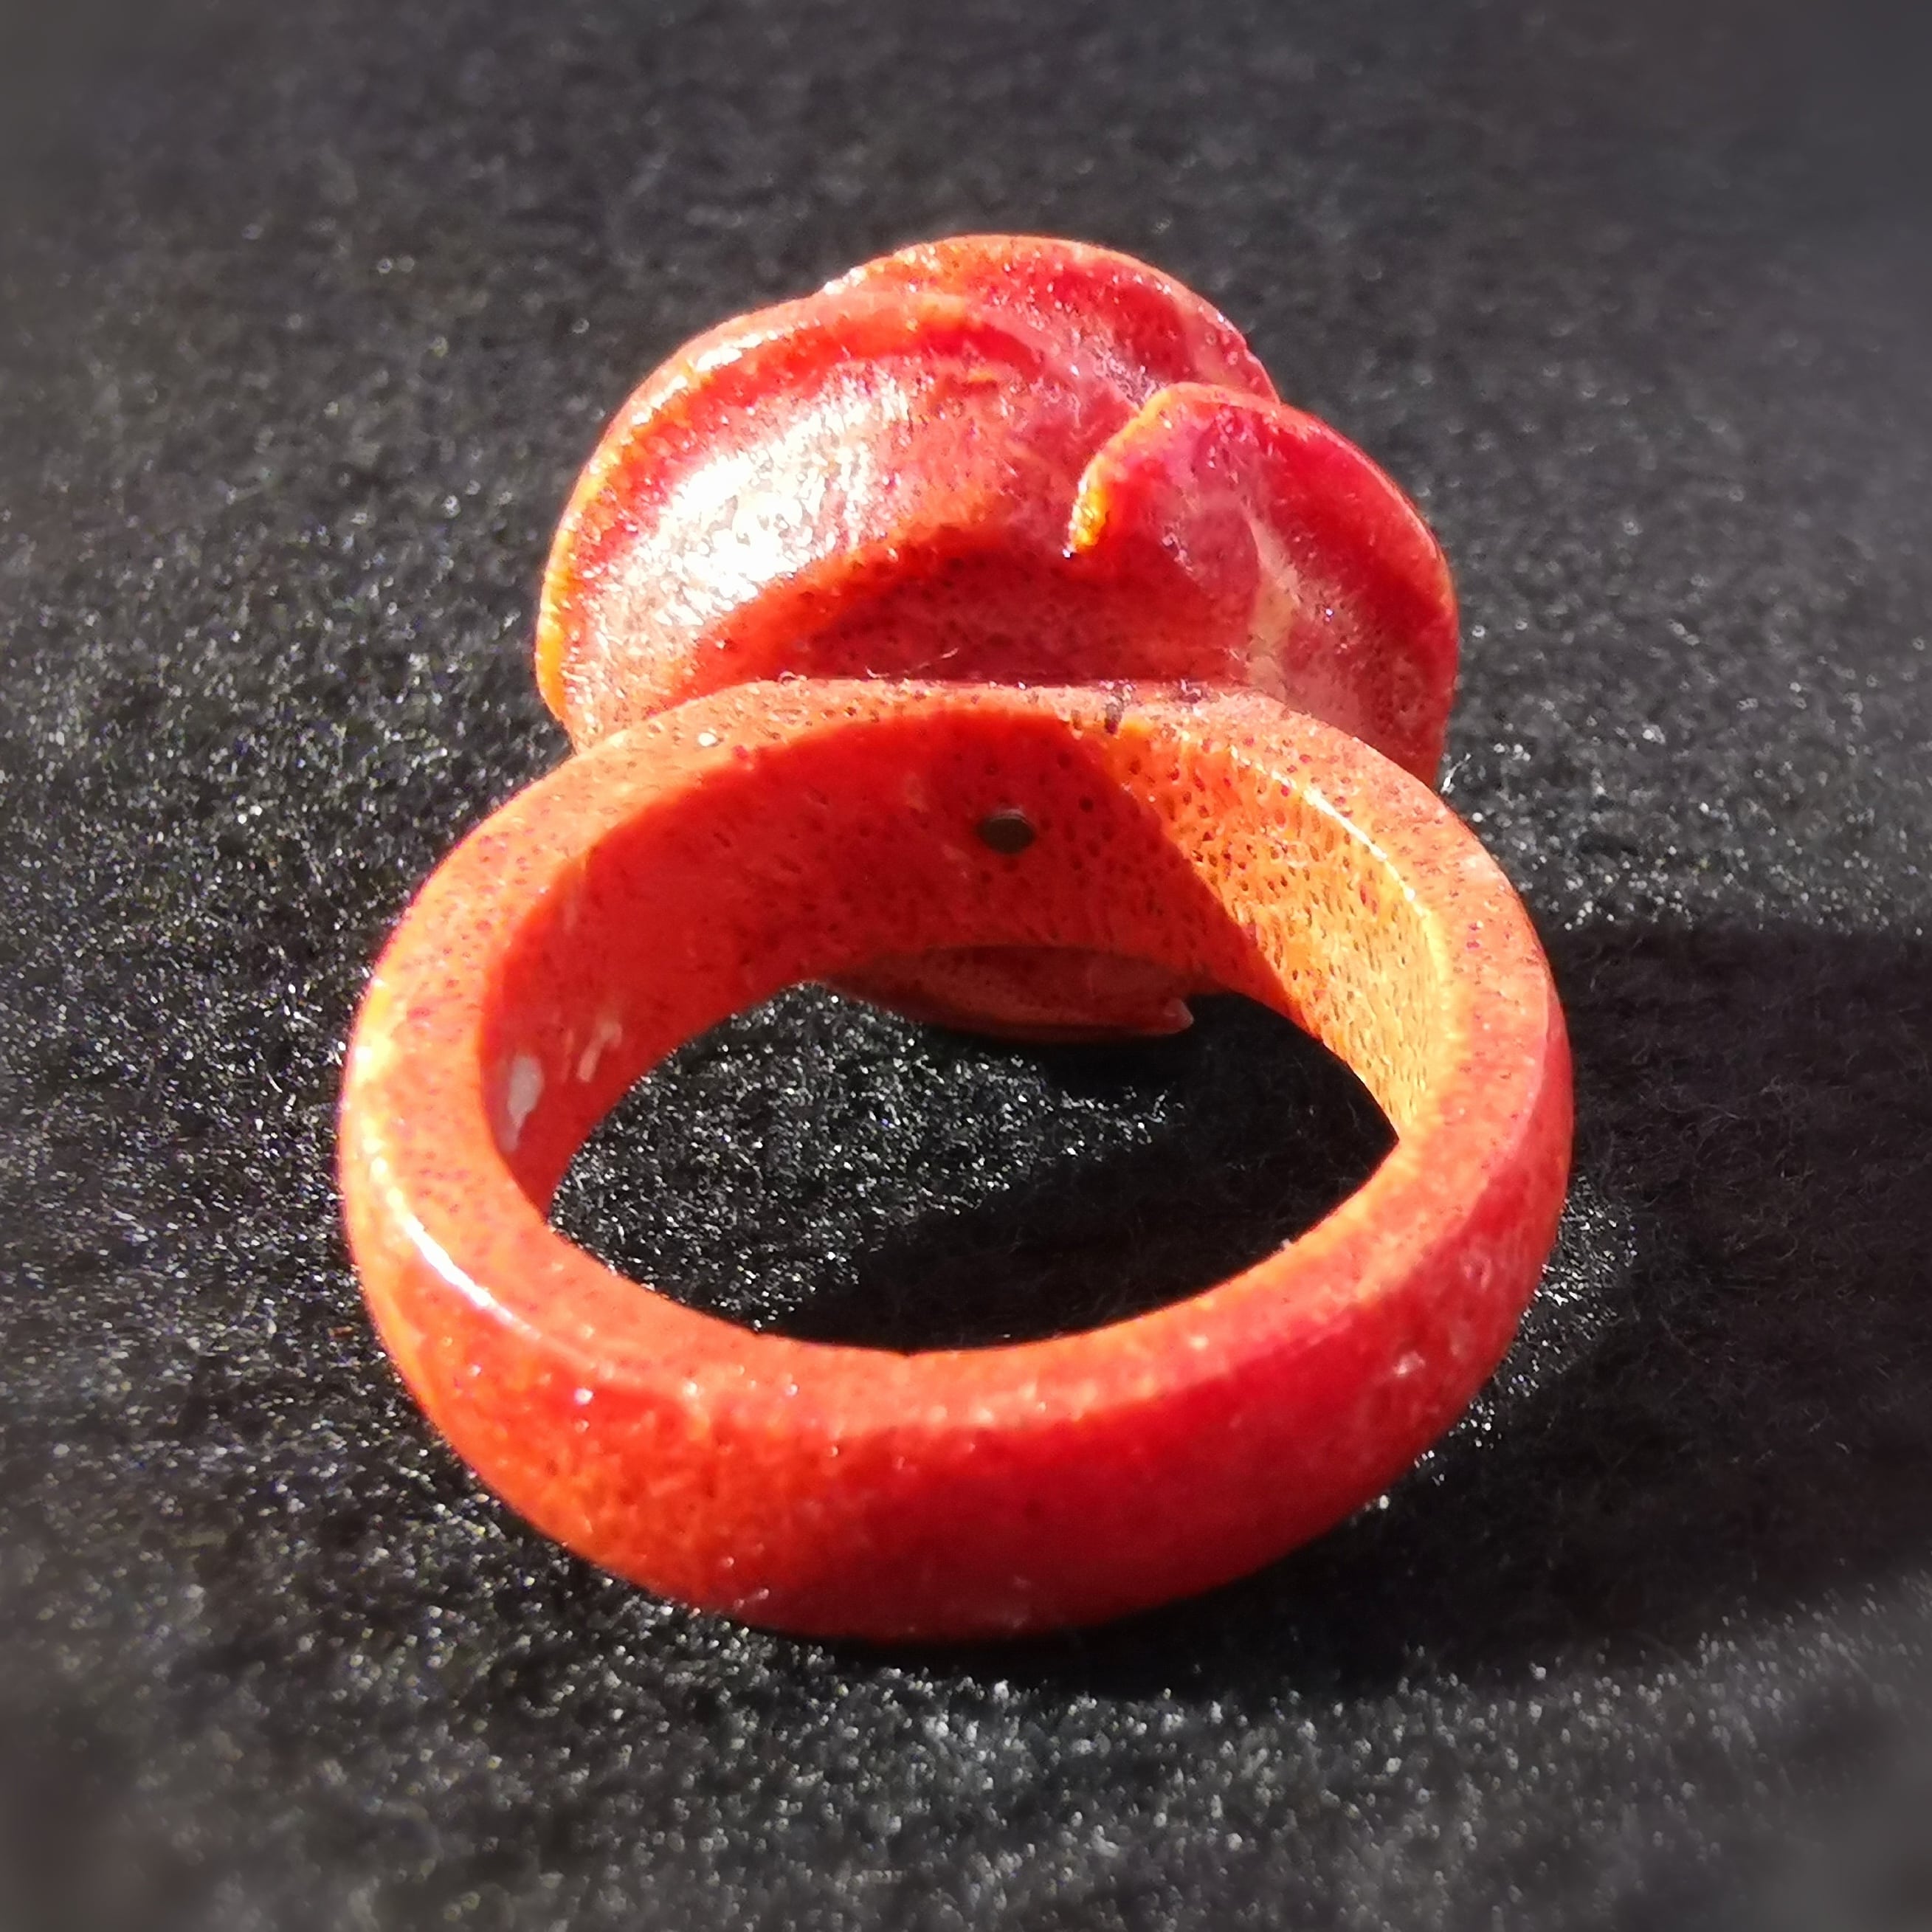 Koralle Rosen Ring, Edelstein Blüten Karma Wurzelchakra Heilstein Fingerring, Größe 59 - Liebes- wie Lebenslust